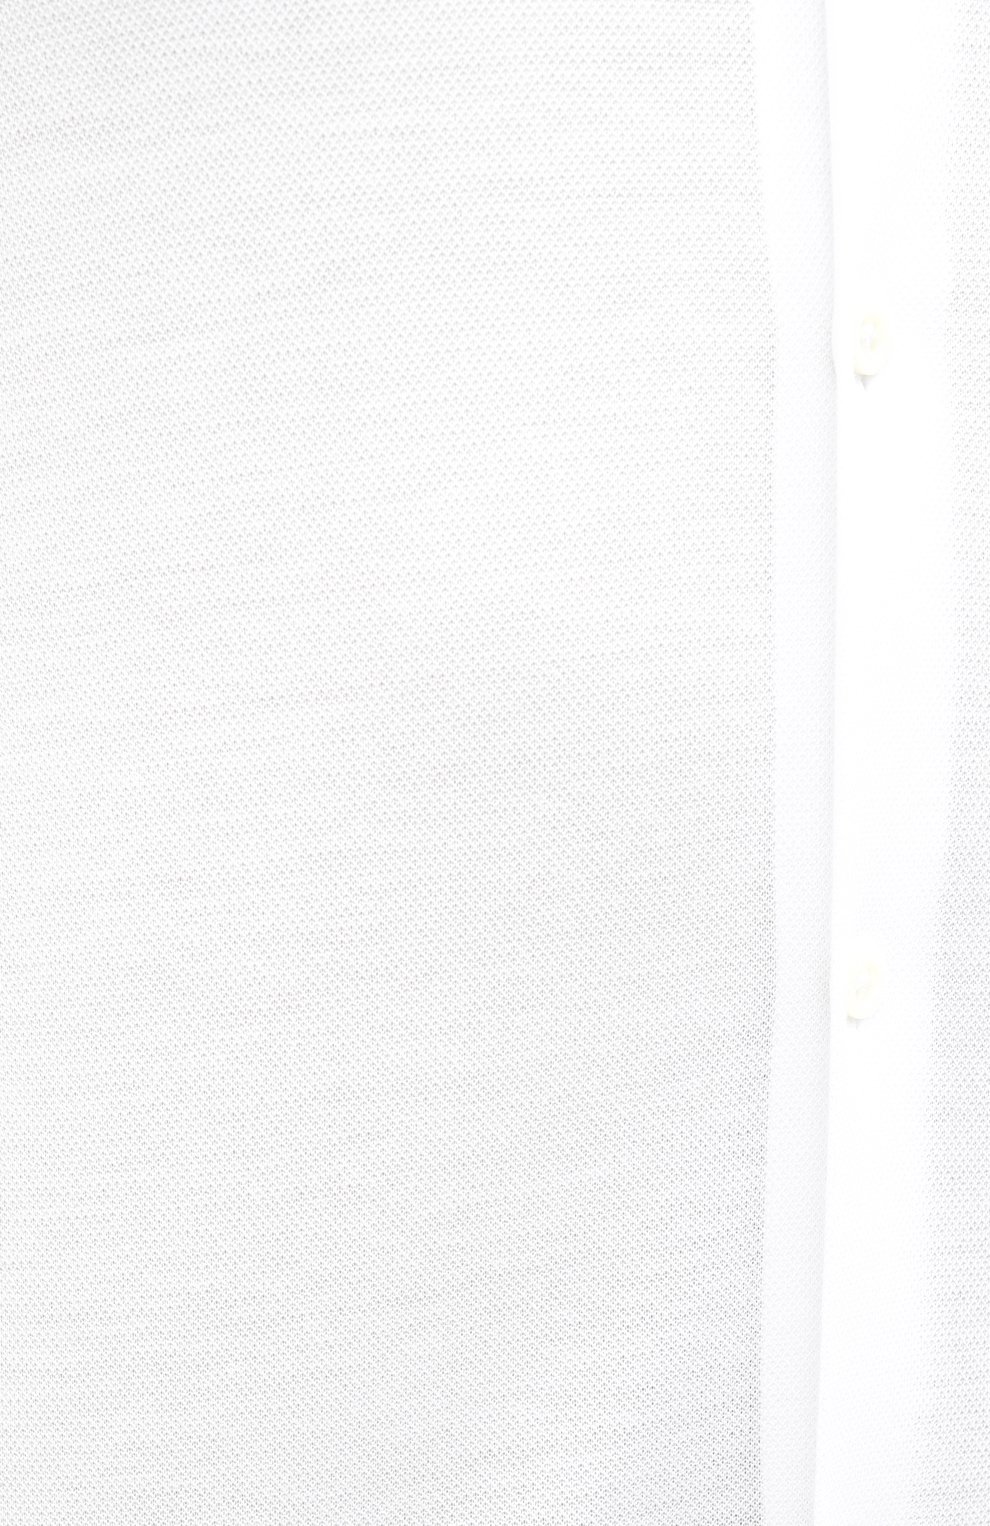 Мужская хлопковая рубашка CORNELIANI белого цвета, арт. 86P012-0811213/00 | Фото 5 (Манжеты: На пуговицах; Рукава: Длинные; Воротник: Акула; Случай: Повседневный; Длина (для топов): Стандартные; Материал внешний: Хлопок; Принт: Однотонные; Мужское Кросс-КТ: Рубашка-одежда; Стили: Кэжуэл)